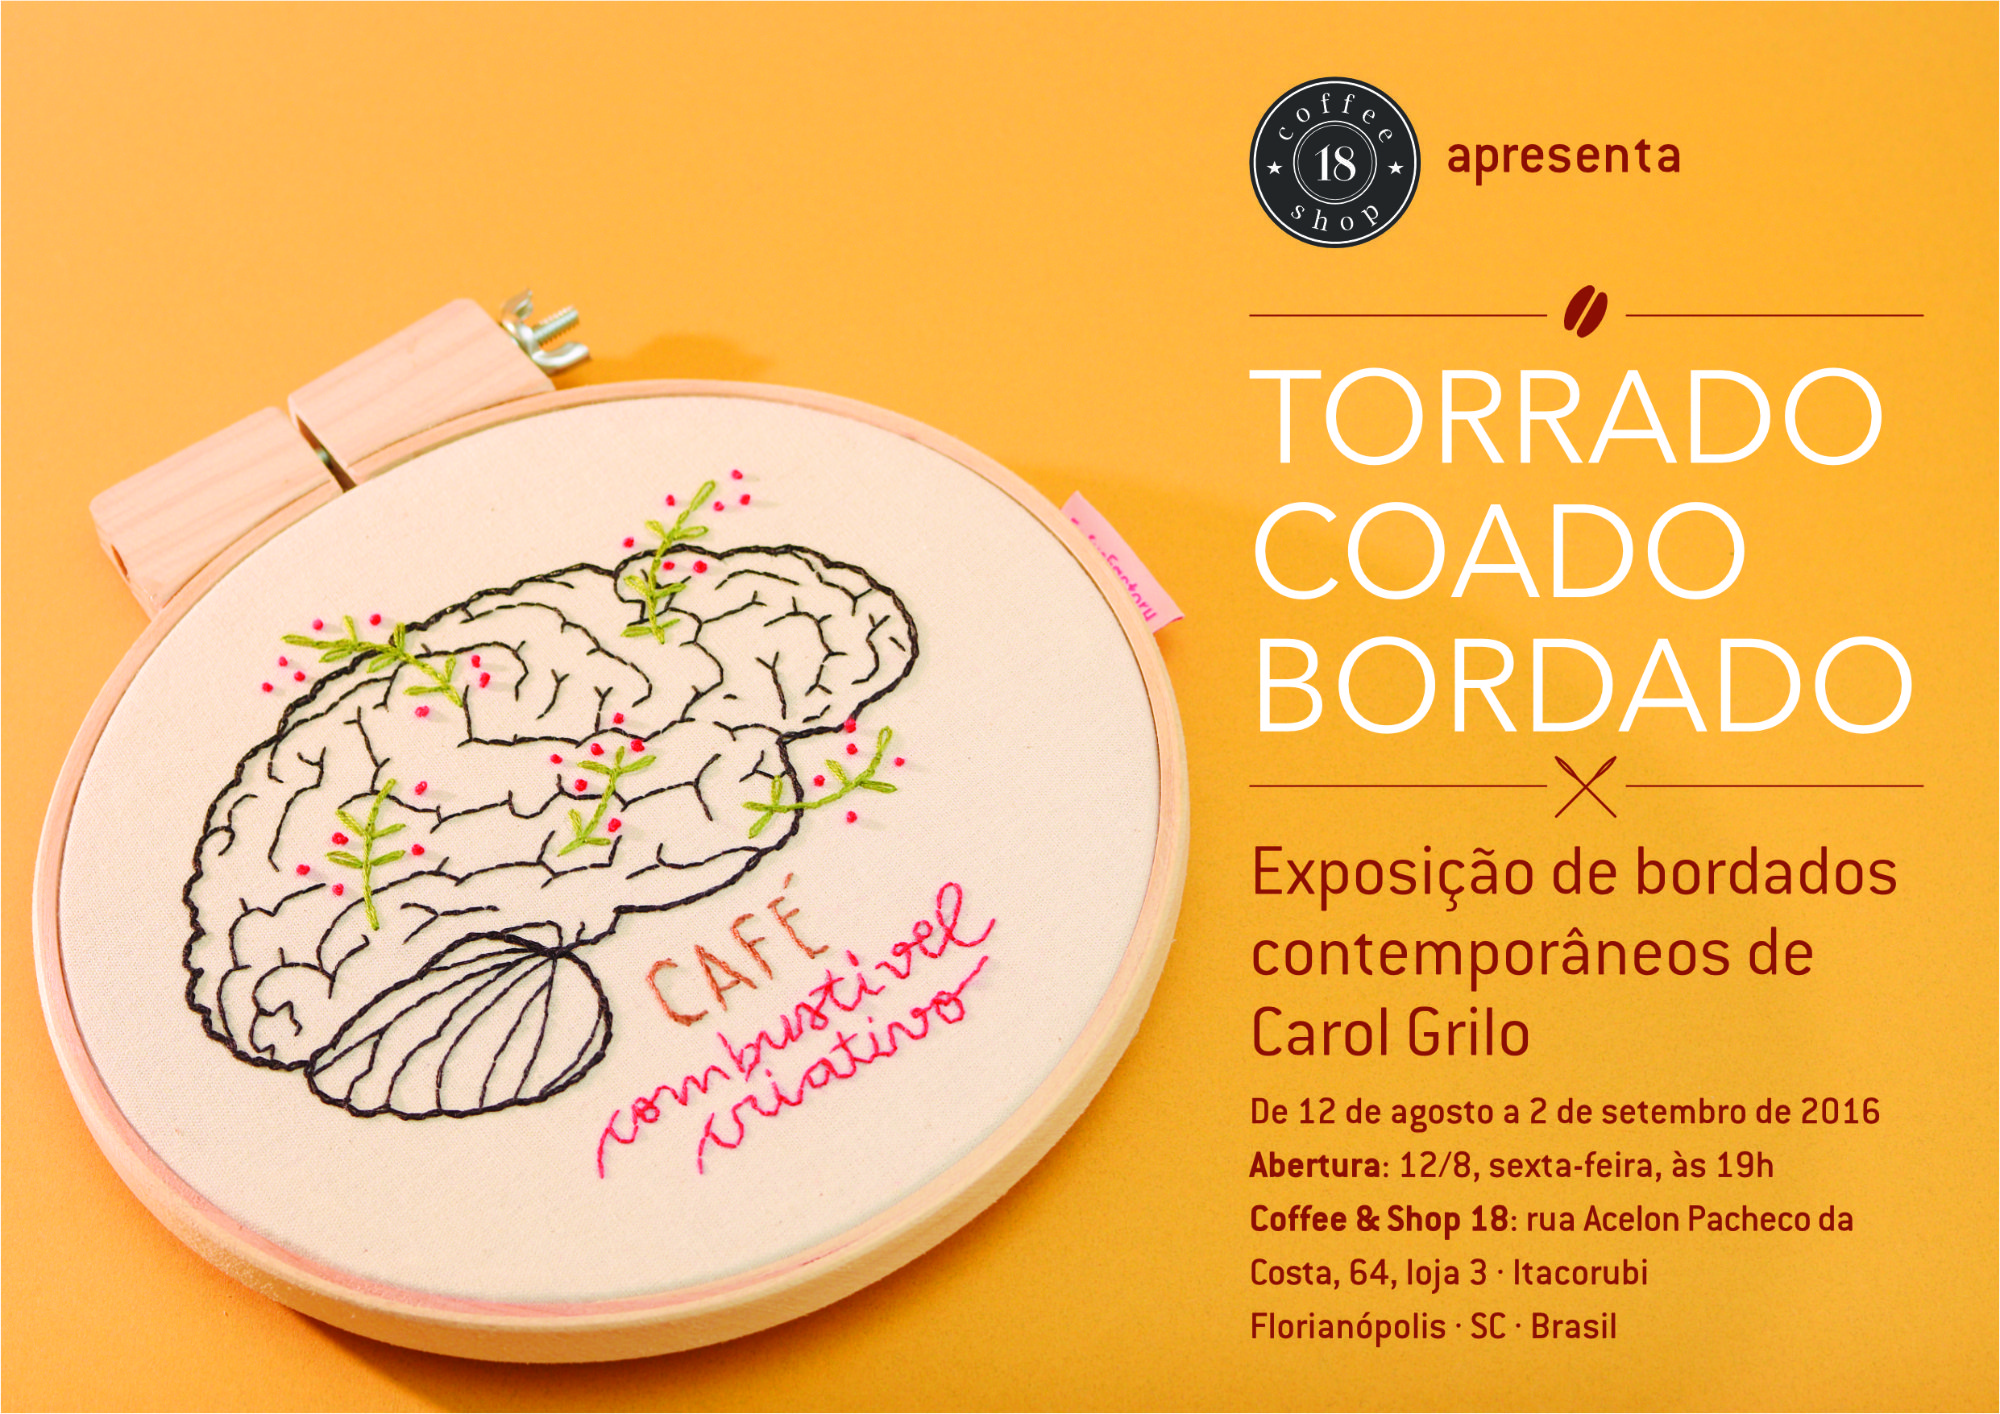 Convite da exposição com um cérebro bordado e os escritos “café: combustível criativo”. À direita, informações sobre a exposição